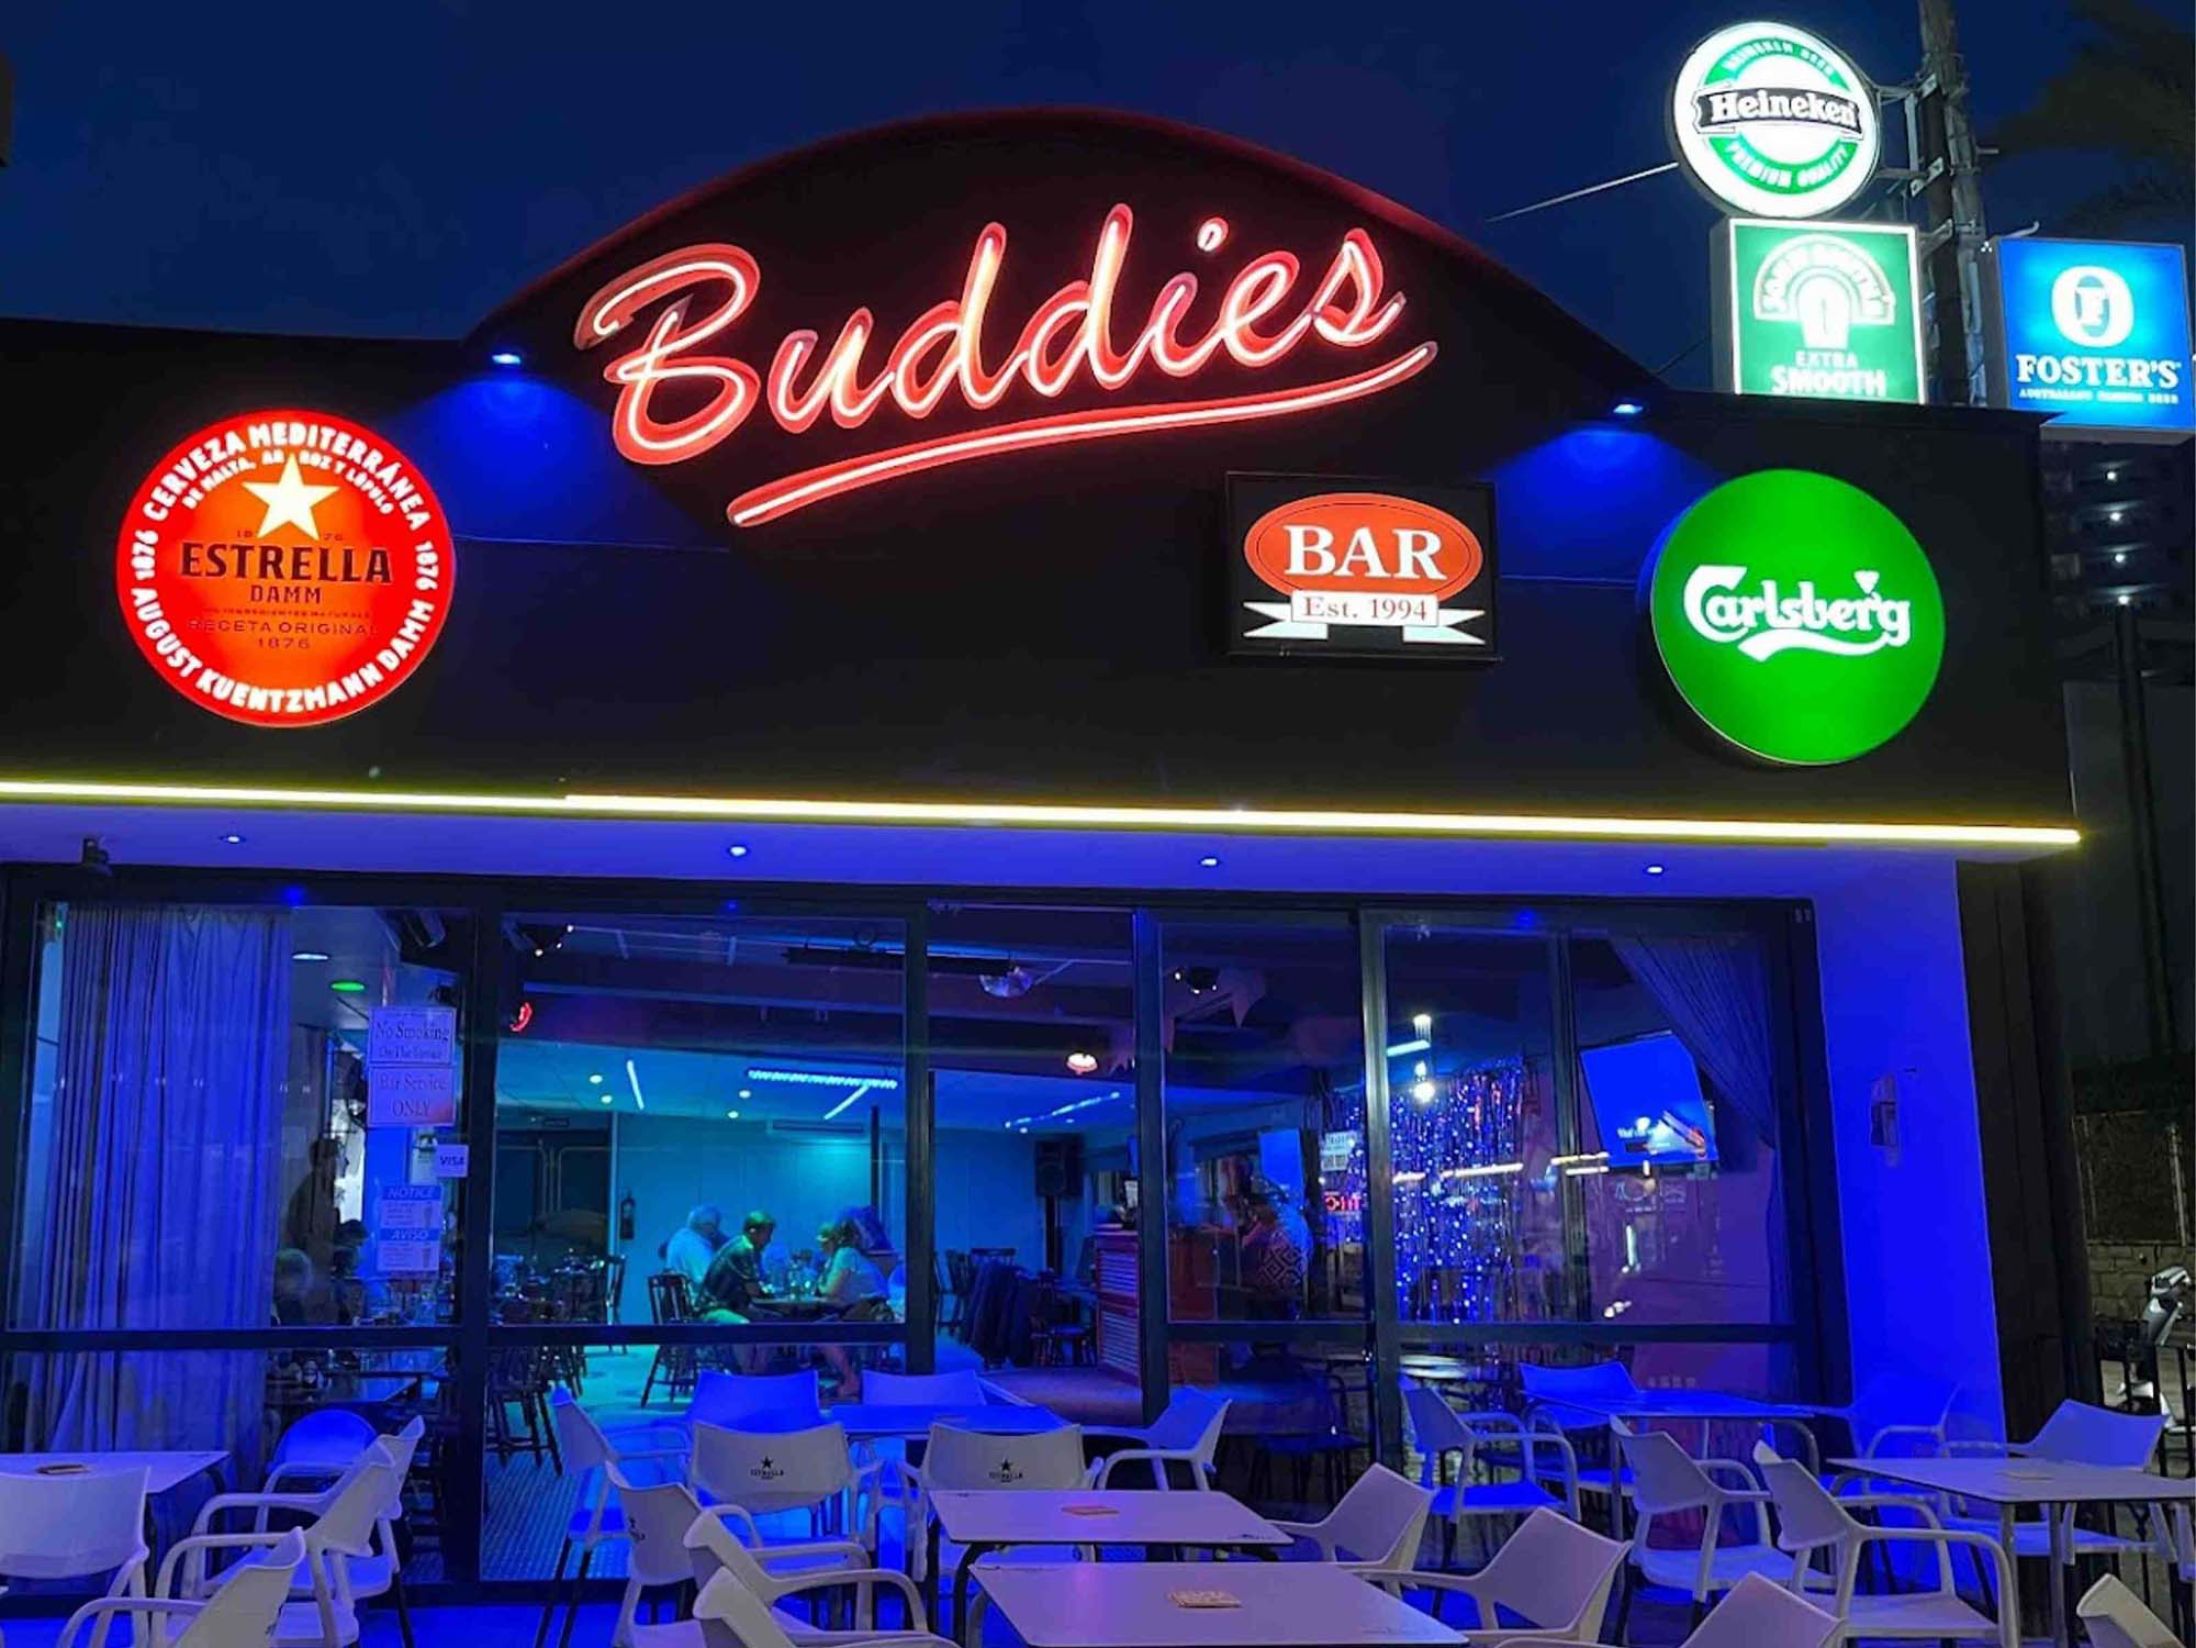 Buddies Bar - Best Bars in Benidorm